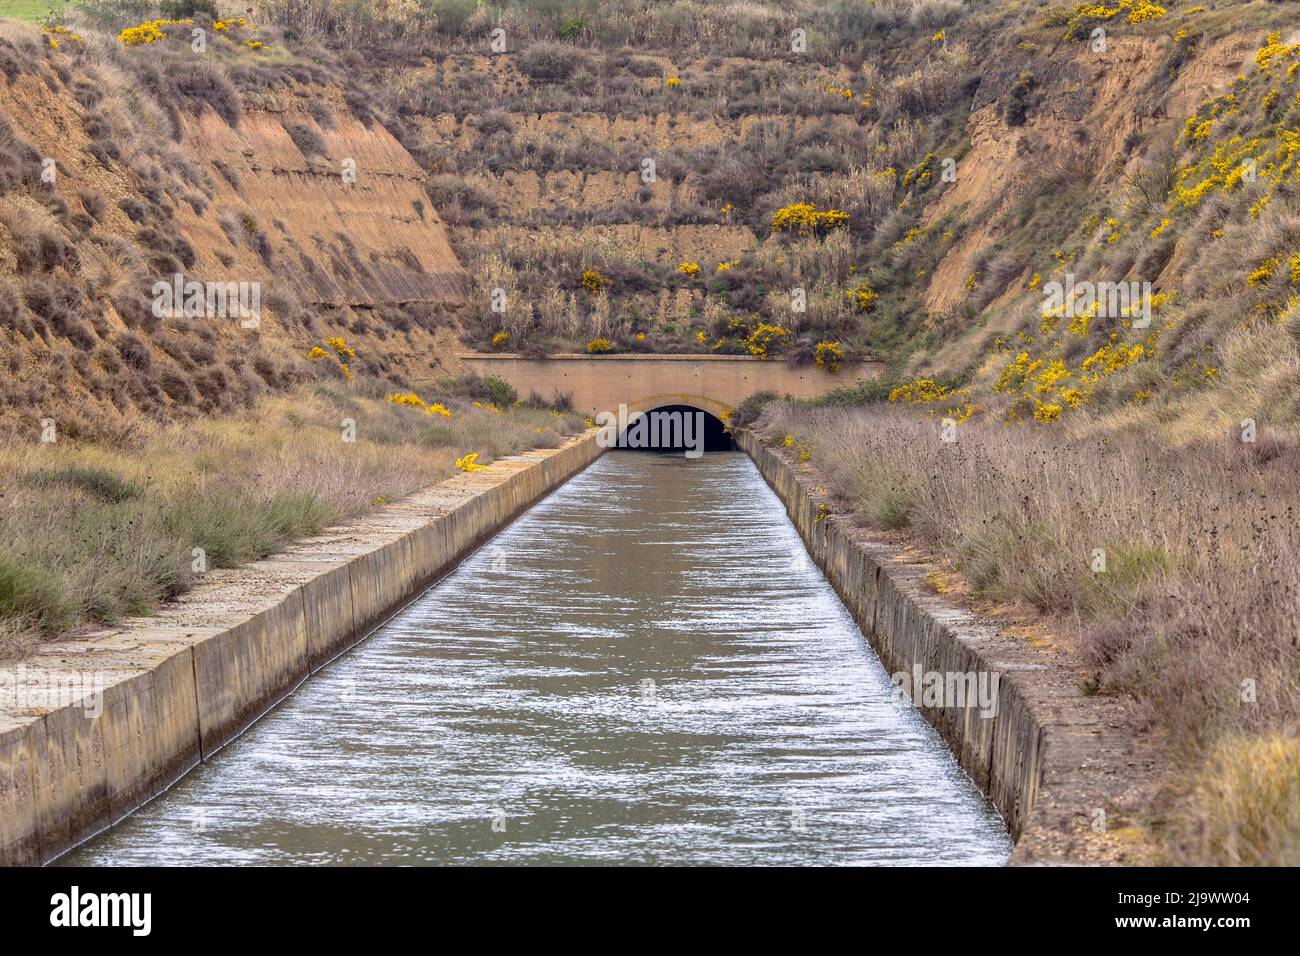 Canal de riego en Huesca, Aragón, Sain Foto de stock